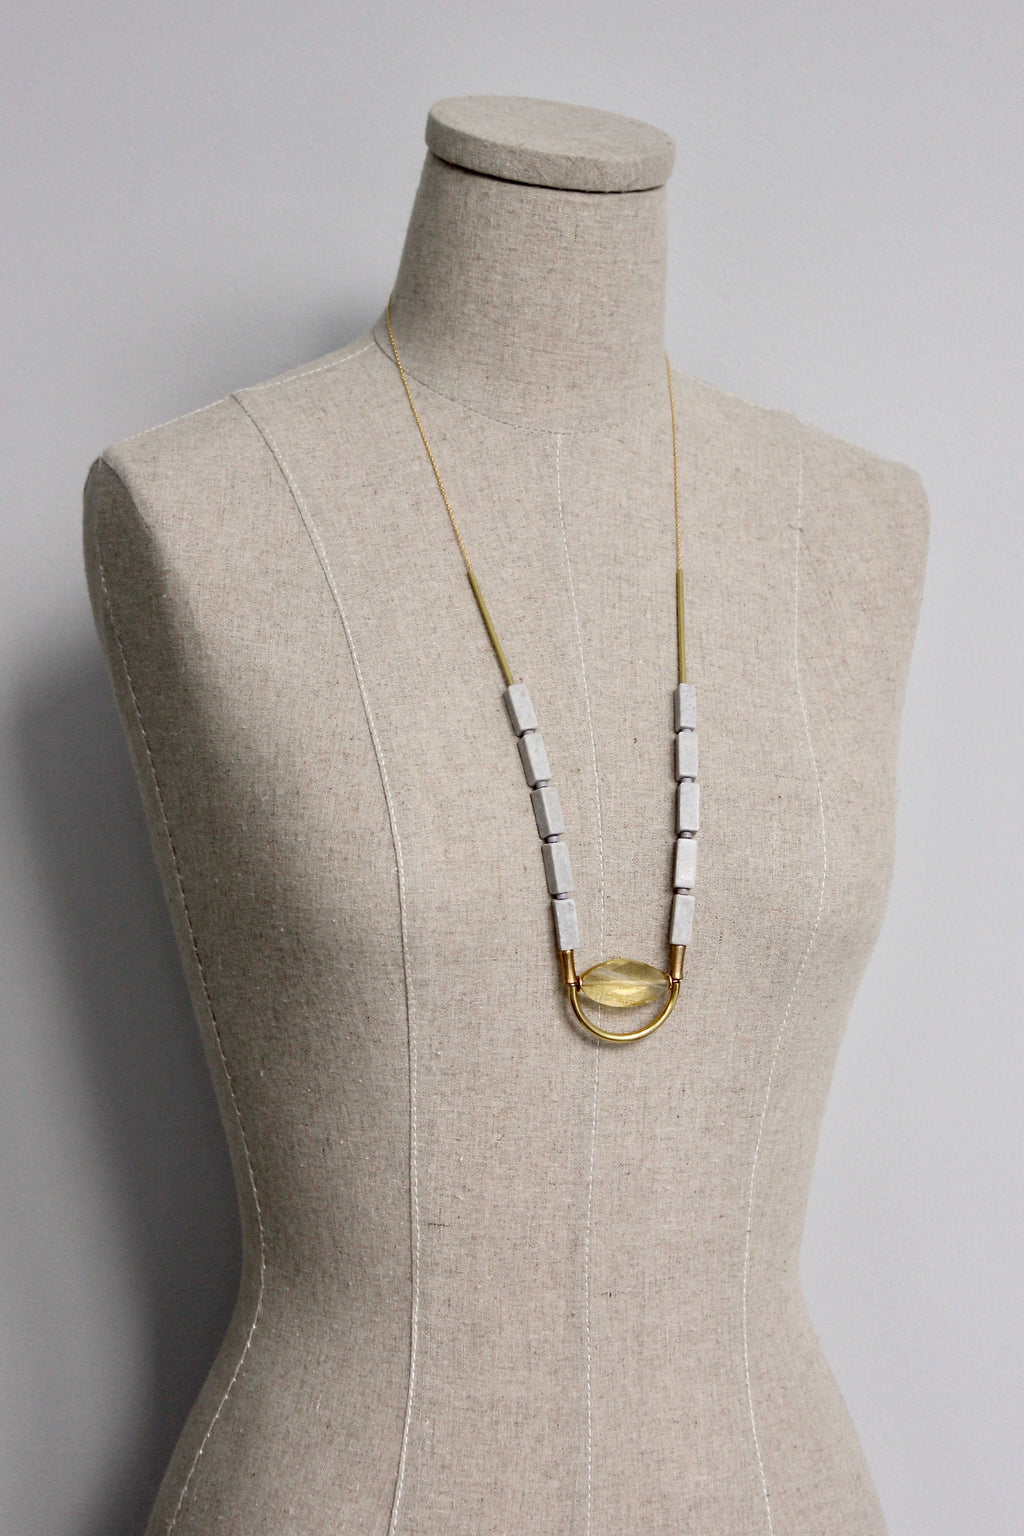 Necklaces – David Aubrey Jewelry